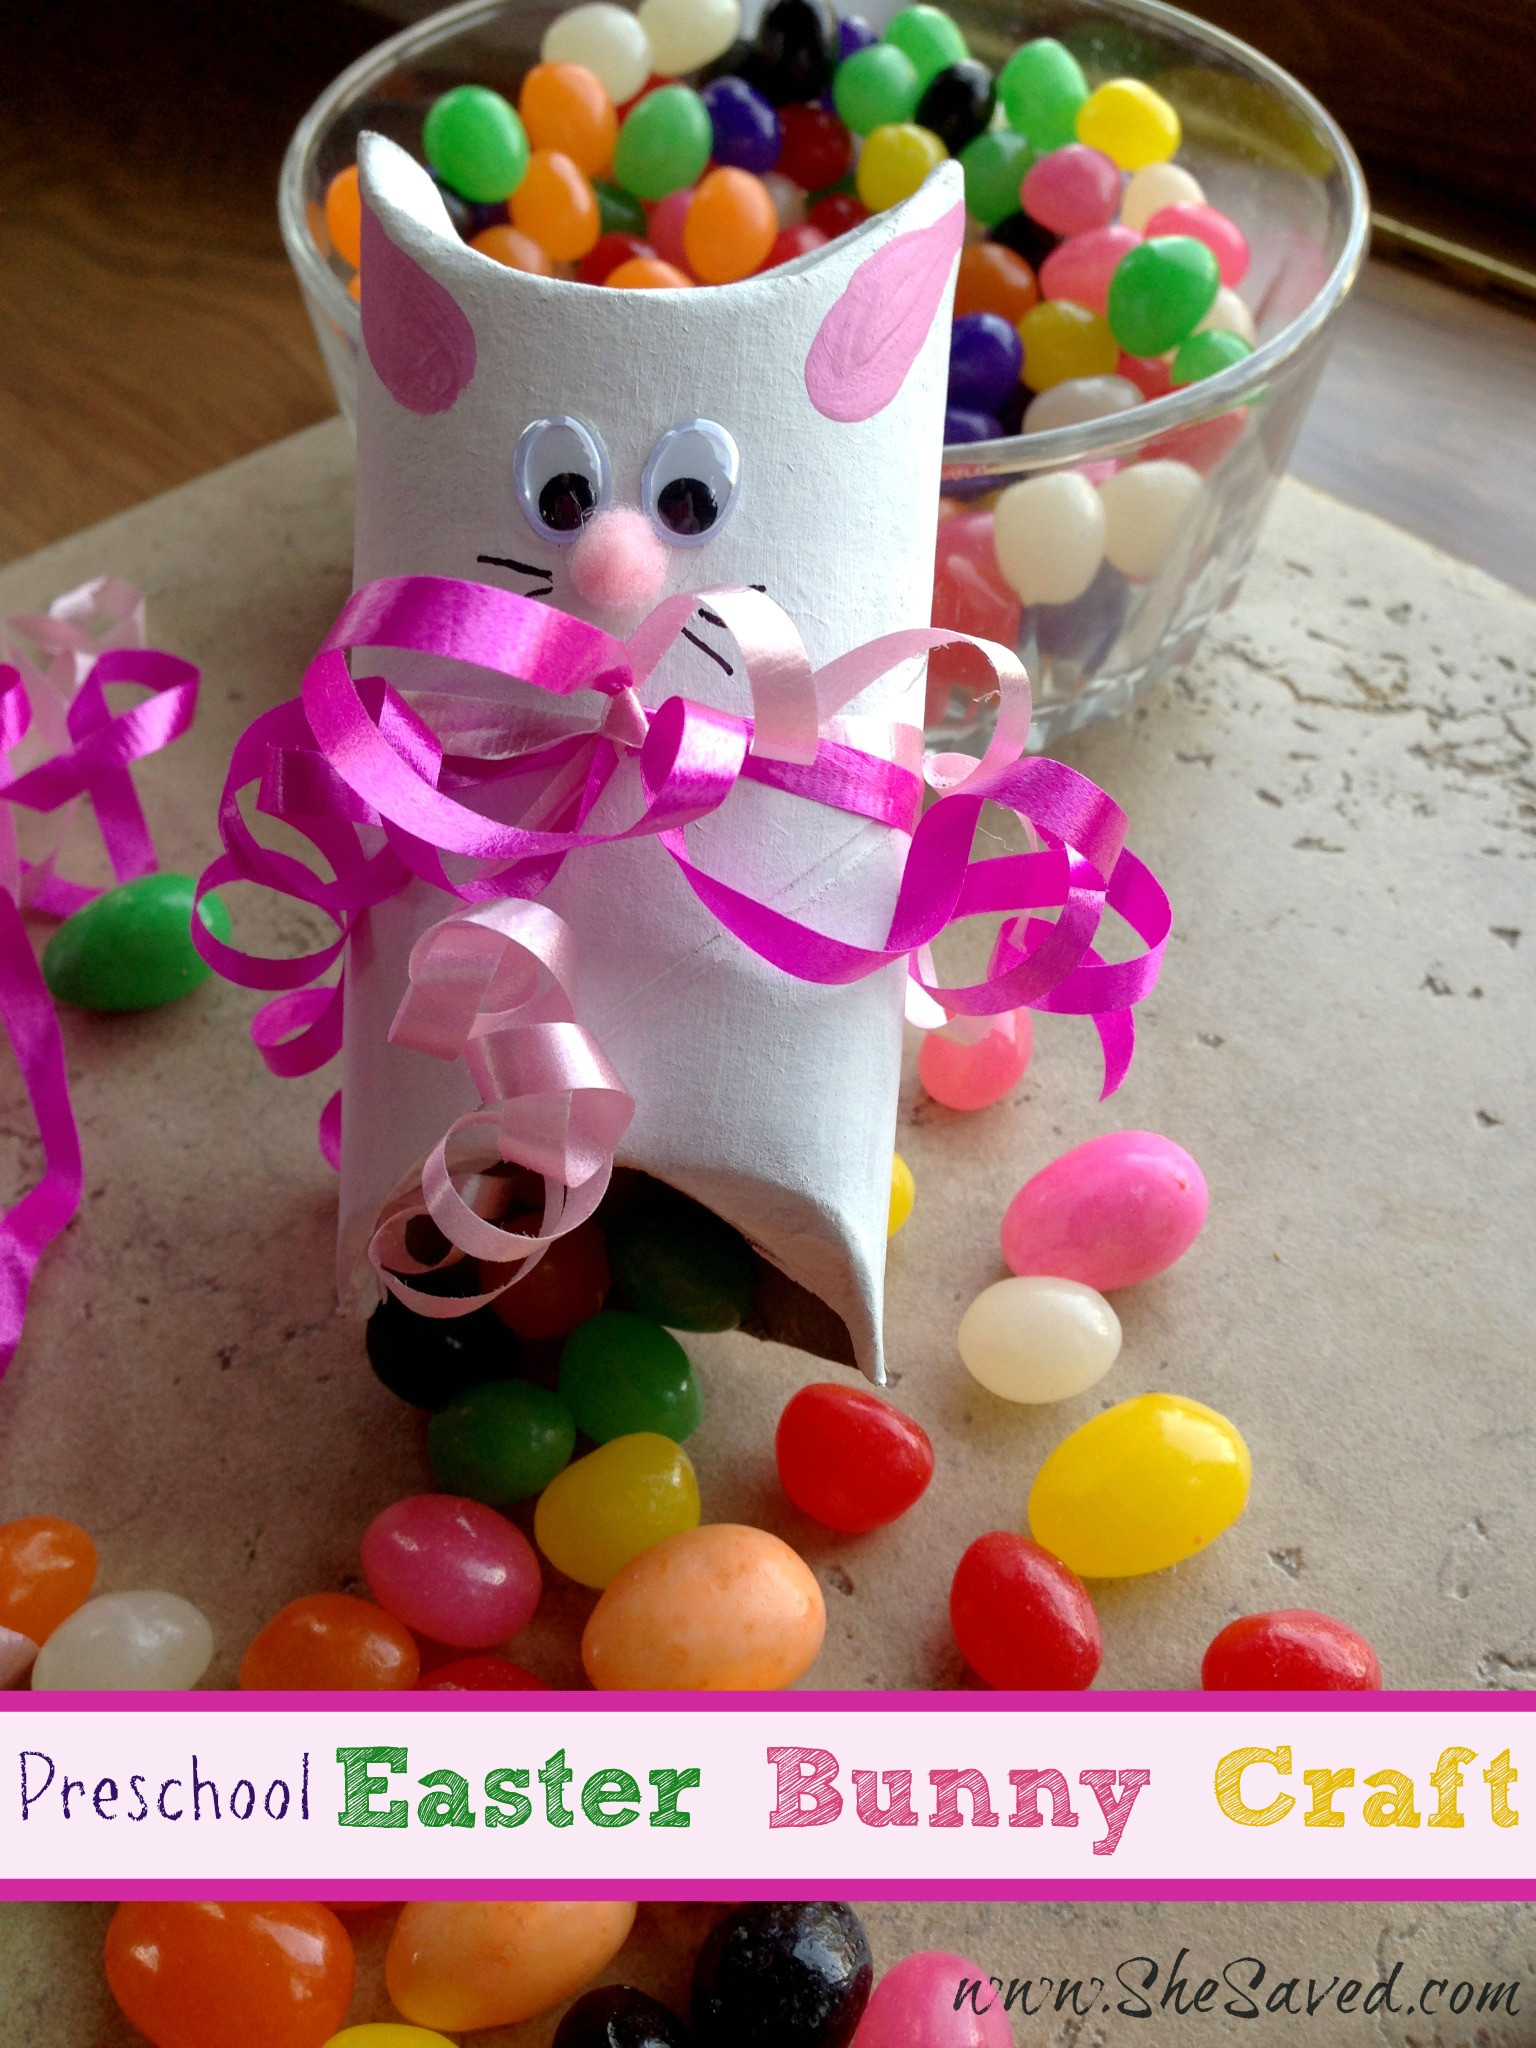 Kindergarten Easter Crafts
 Preschool Easter Bunny Crafts SheSaved